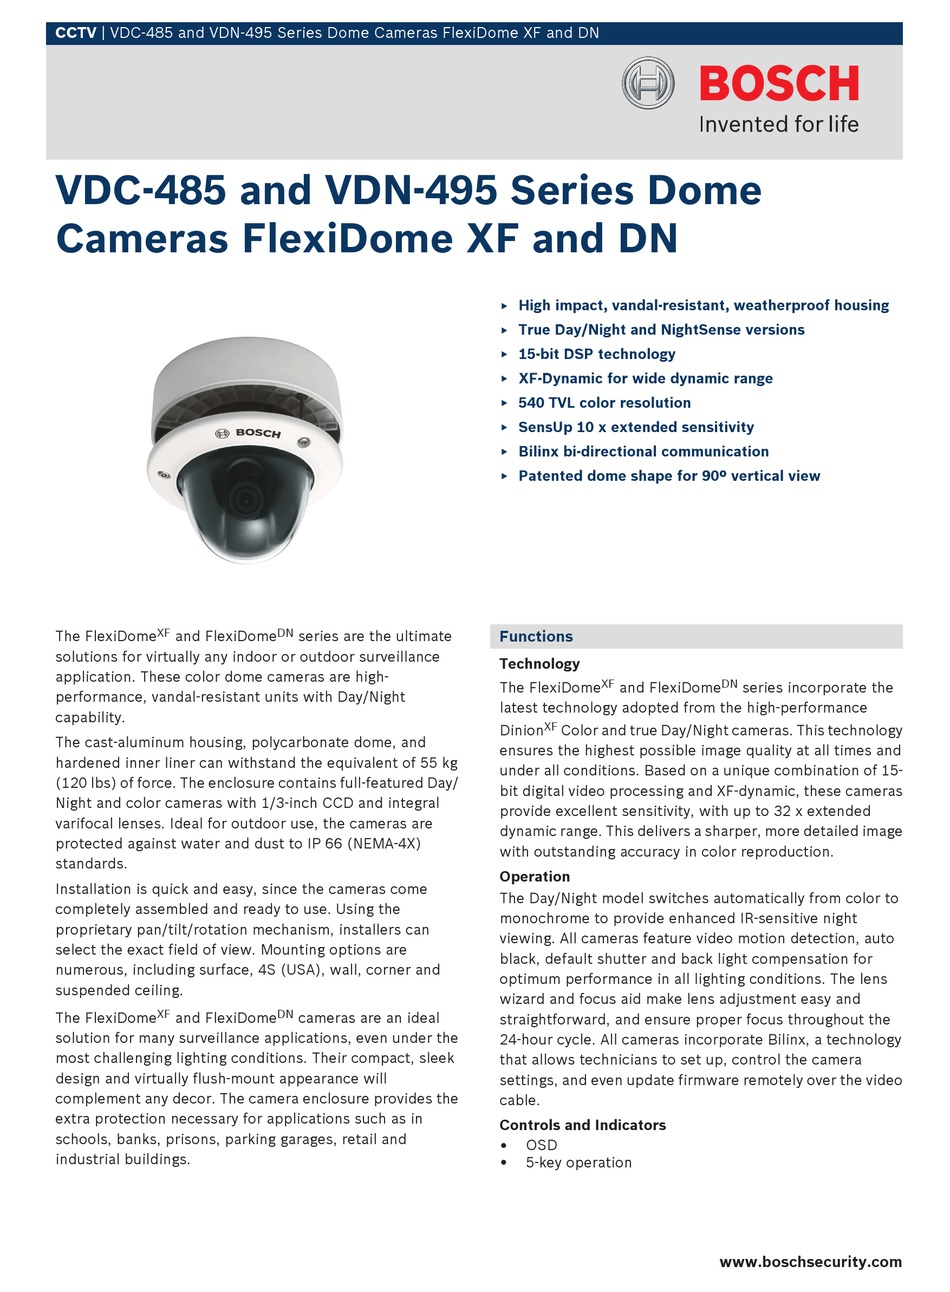 Bosch VDC-485V04-20 Flexi Dome Surveillance Camera 